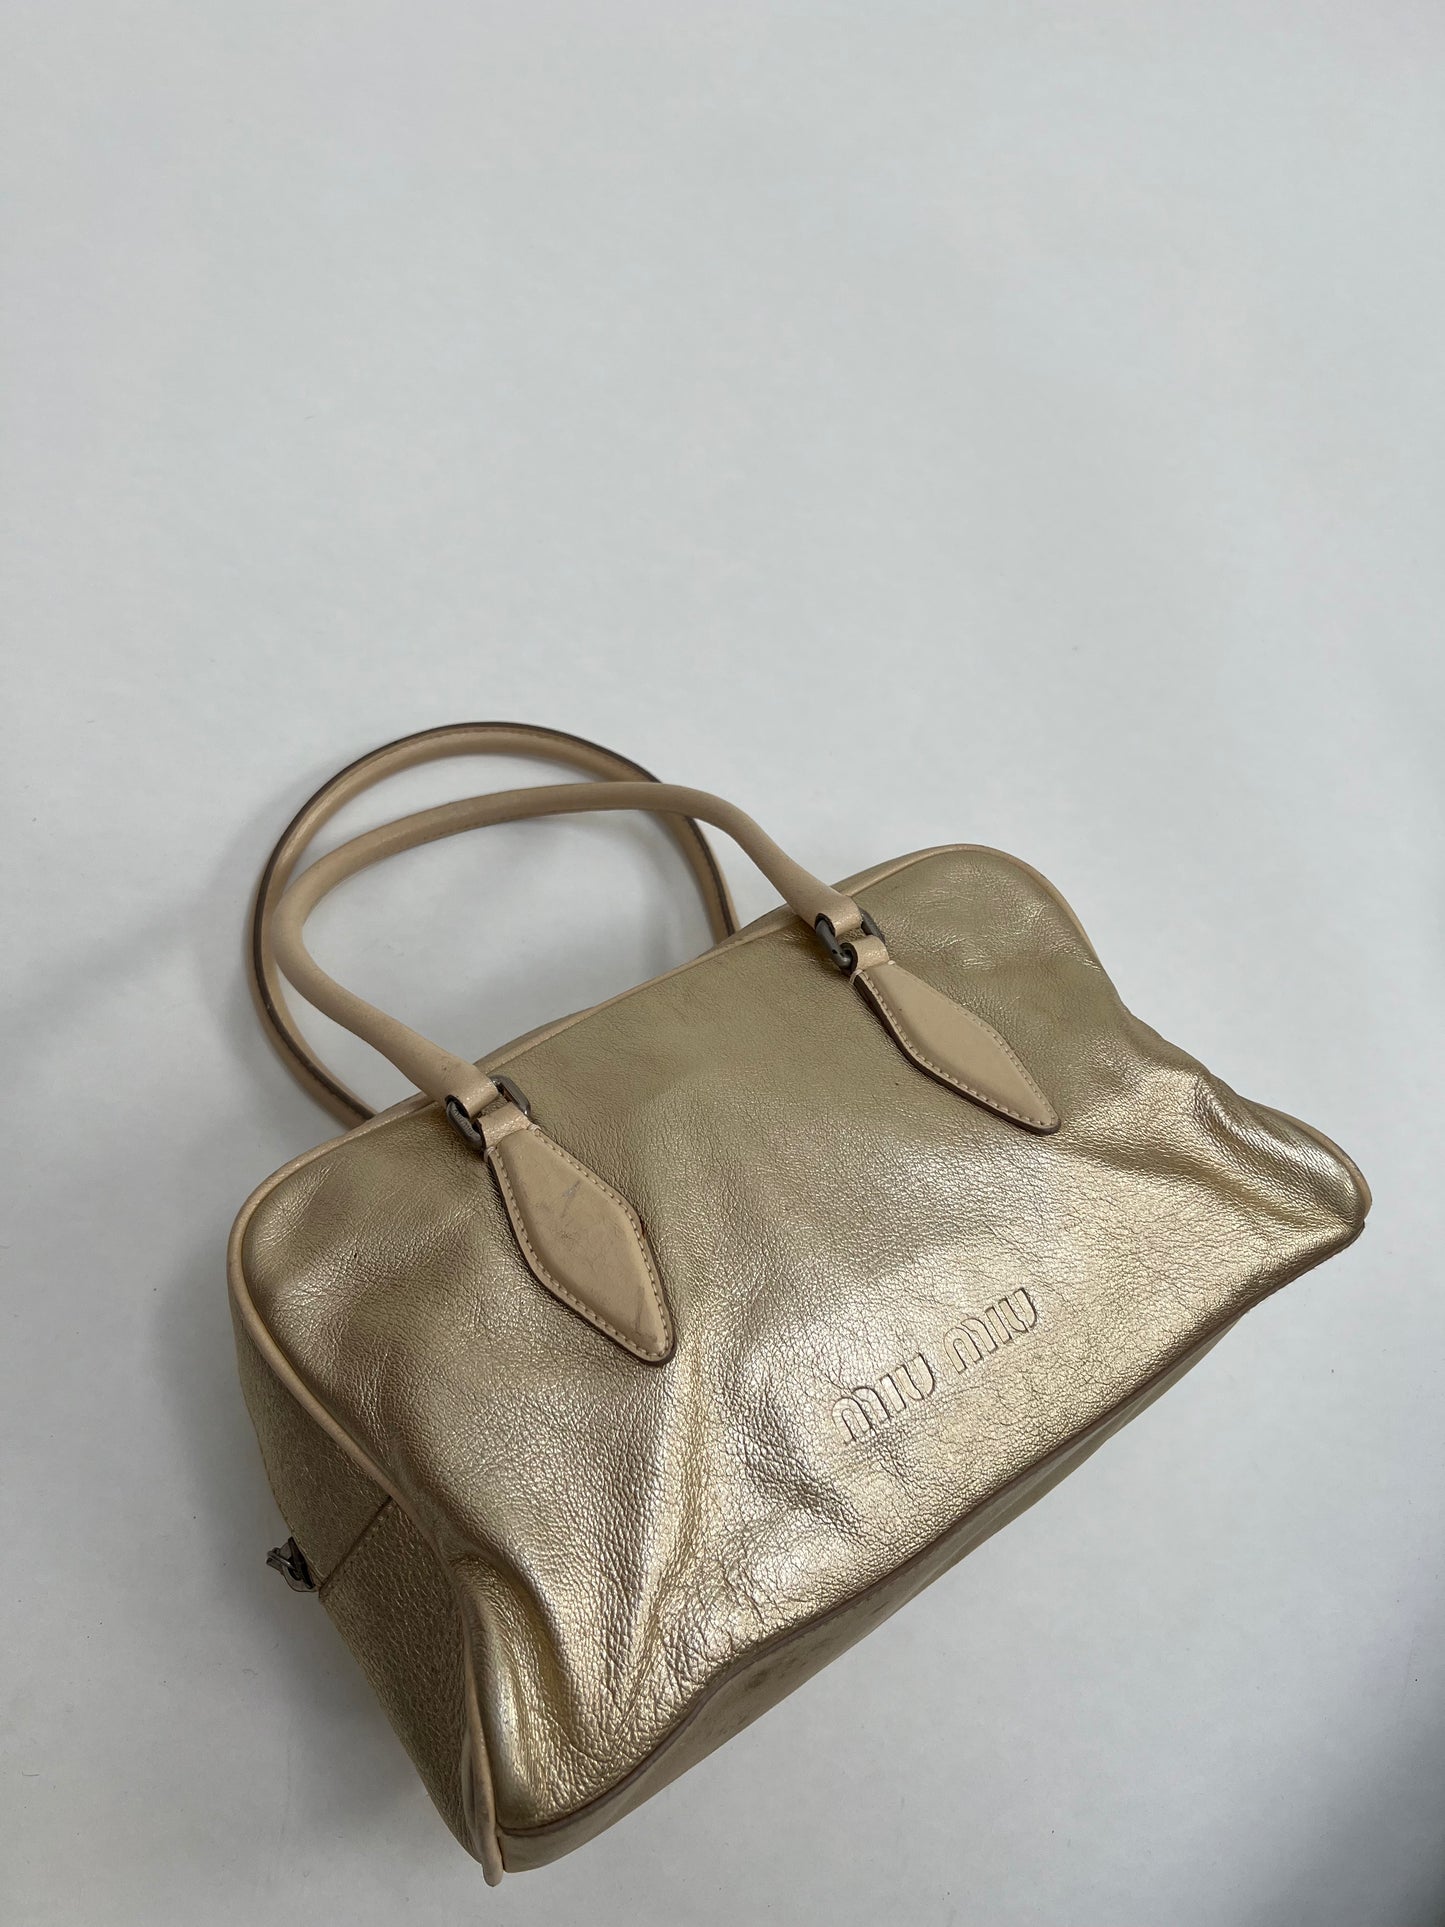 Miu Miu metallic bag